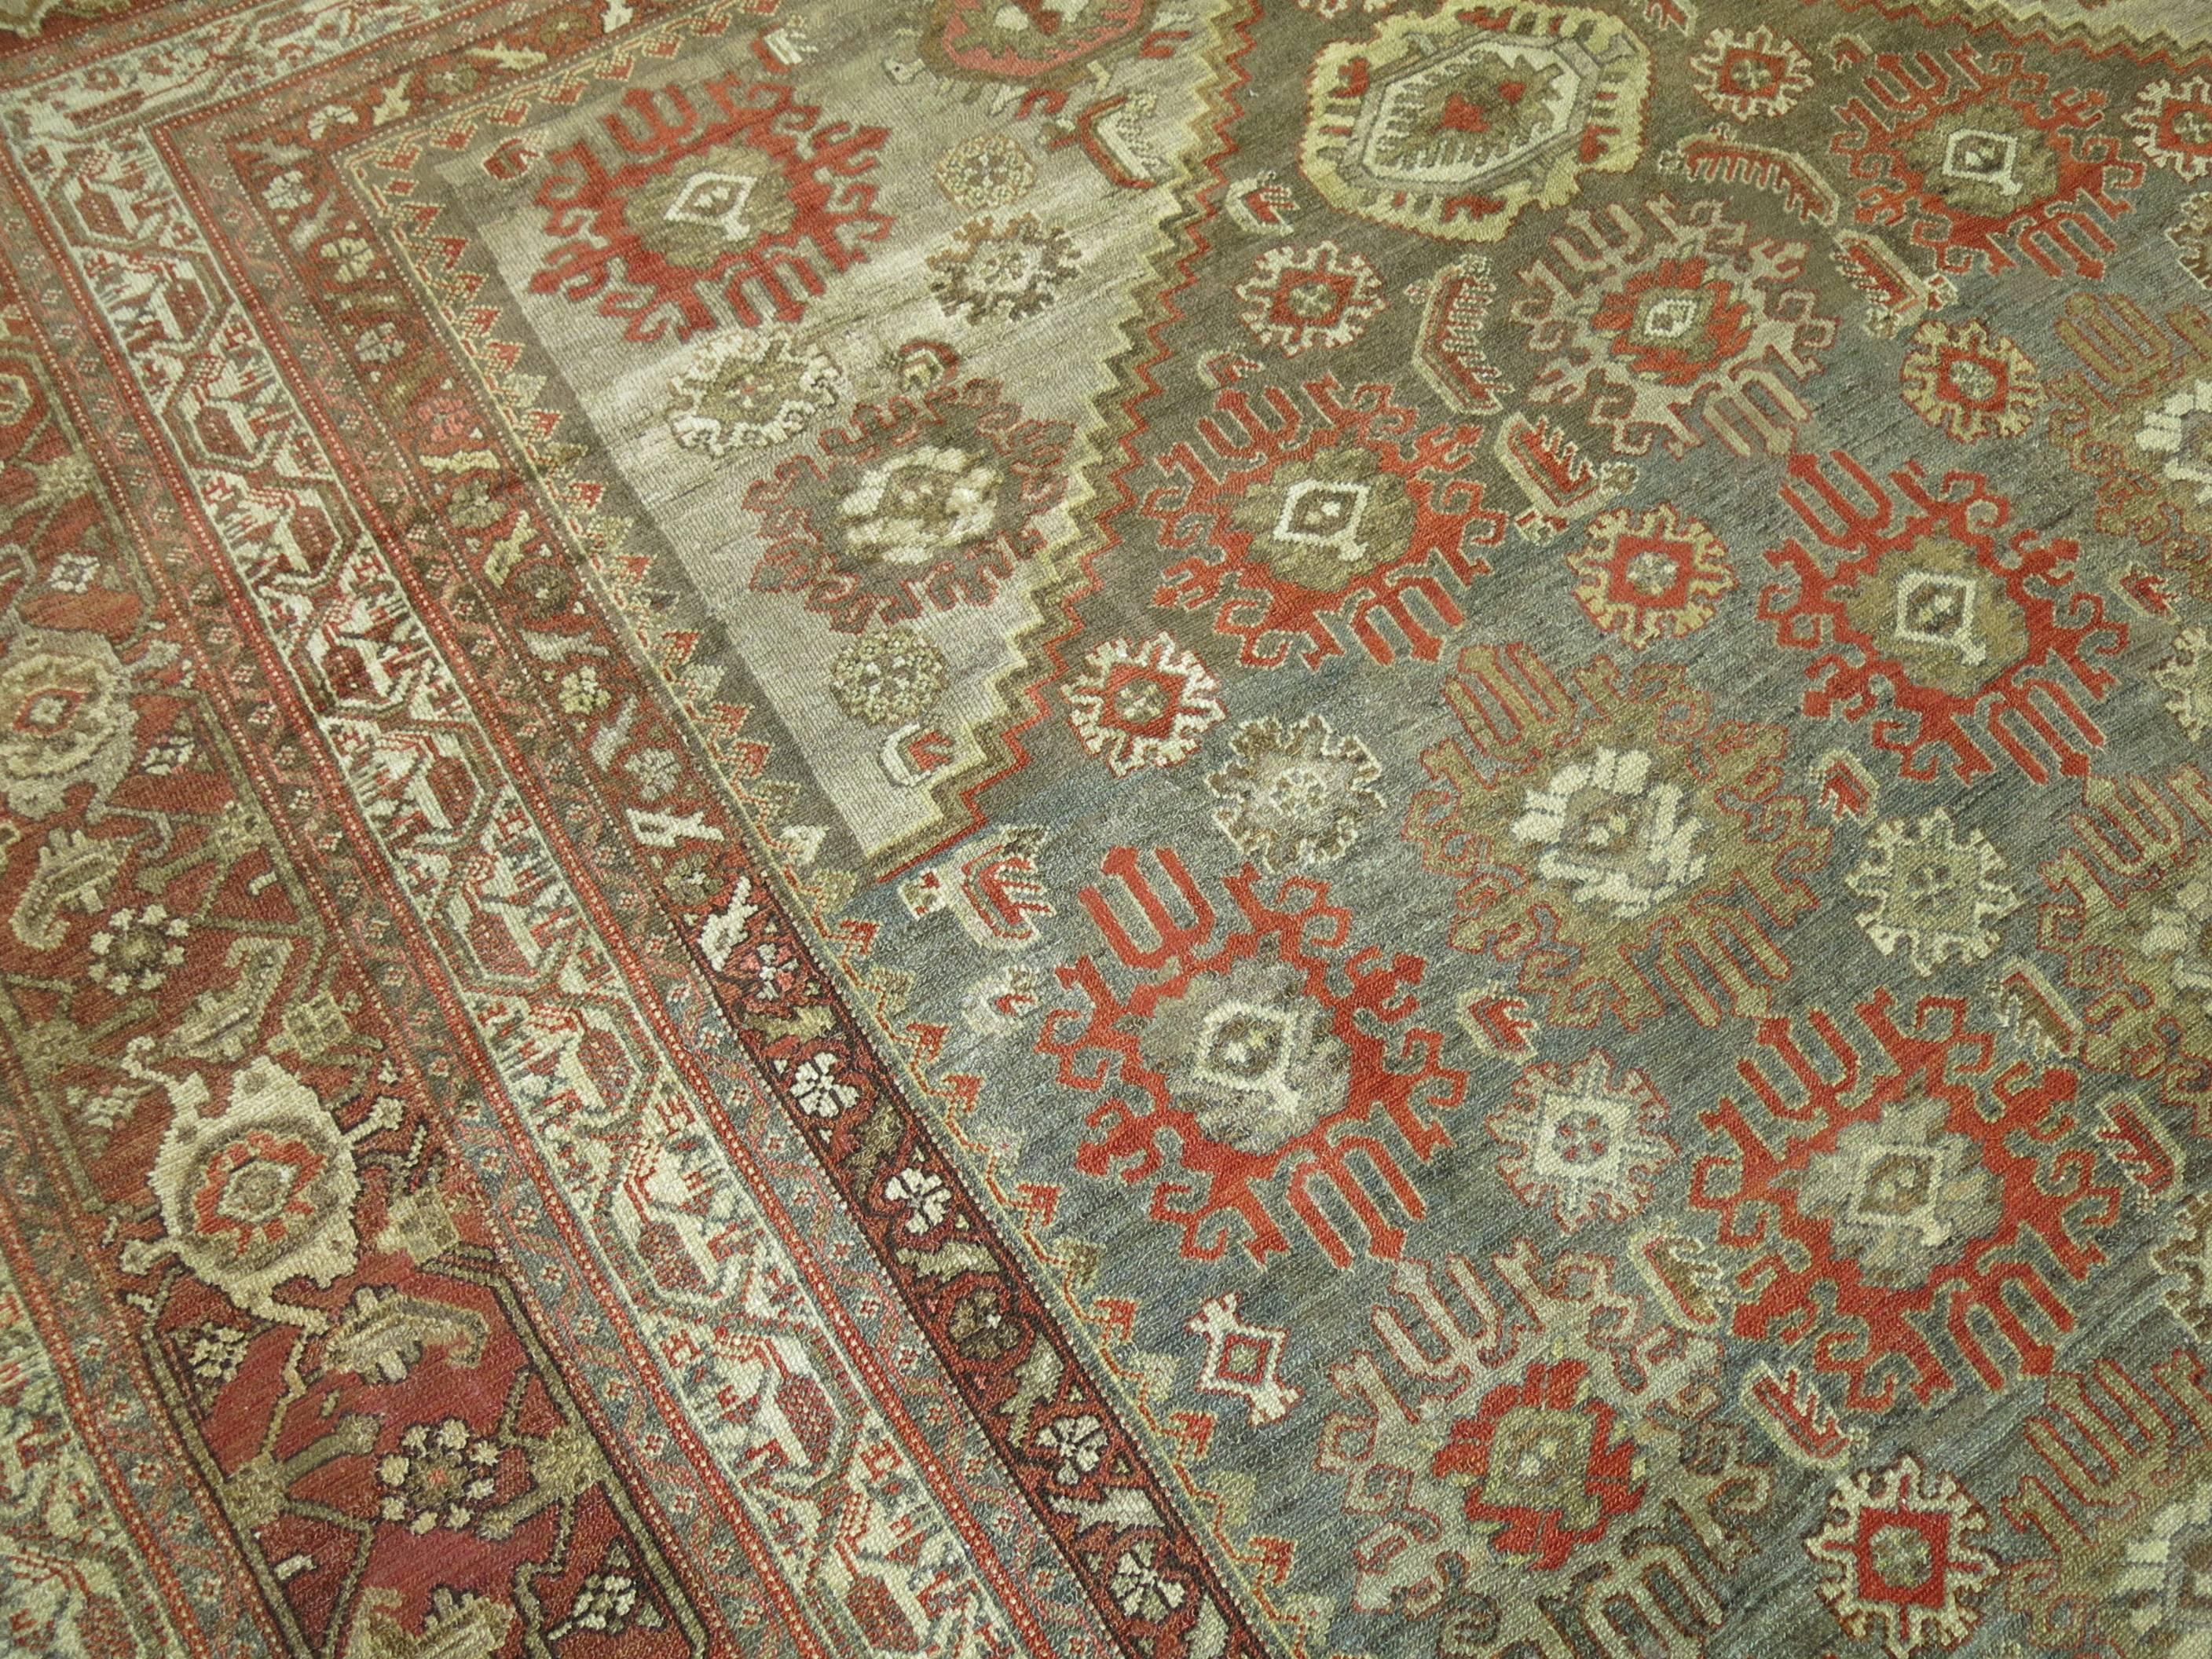 Antique Persian Malayer Decorative Carpet in  Predominant Silver Color 2